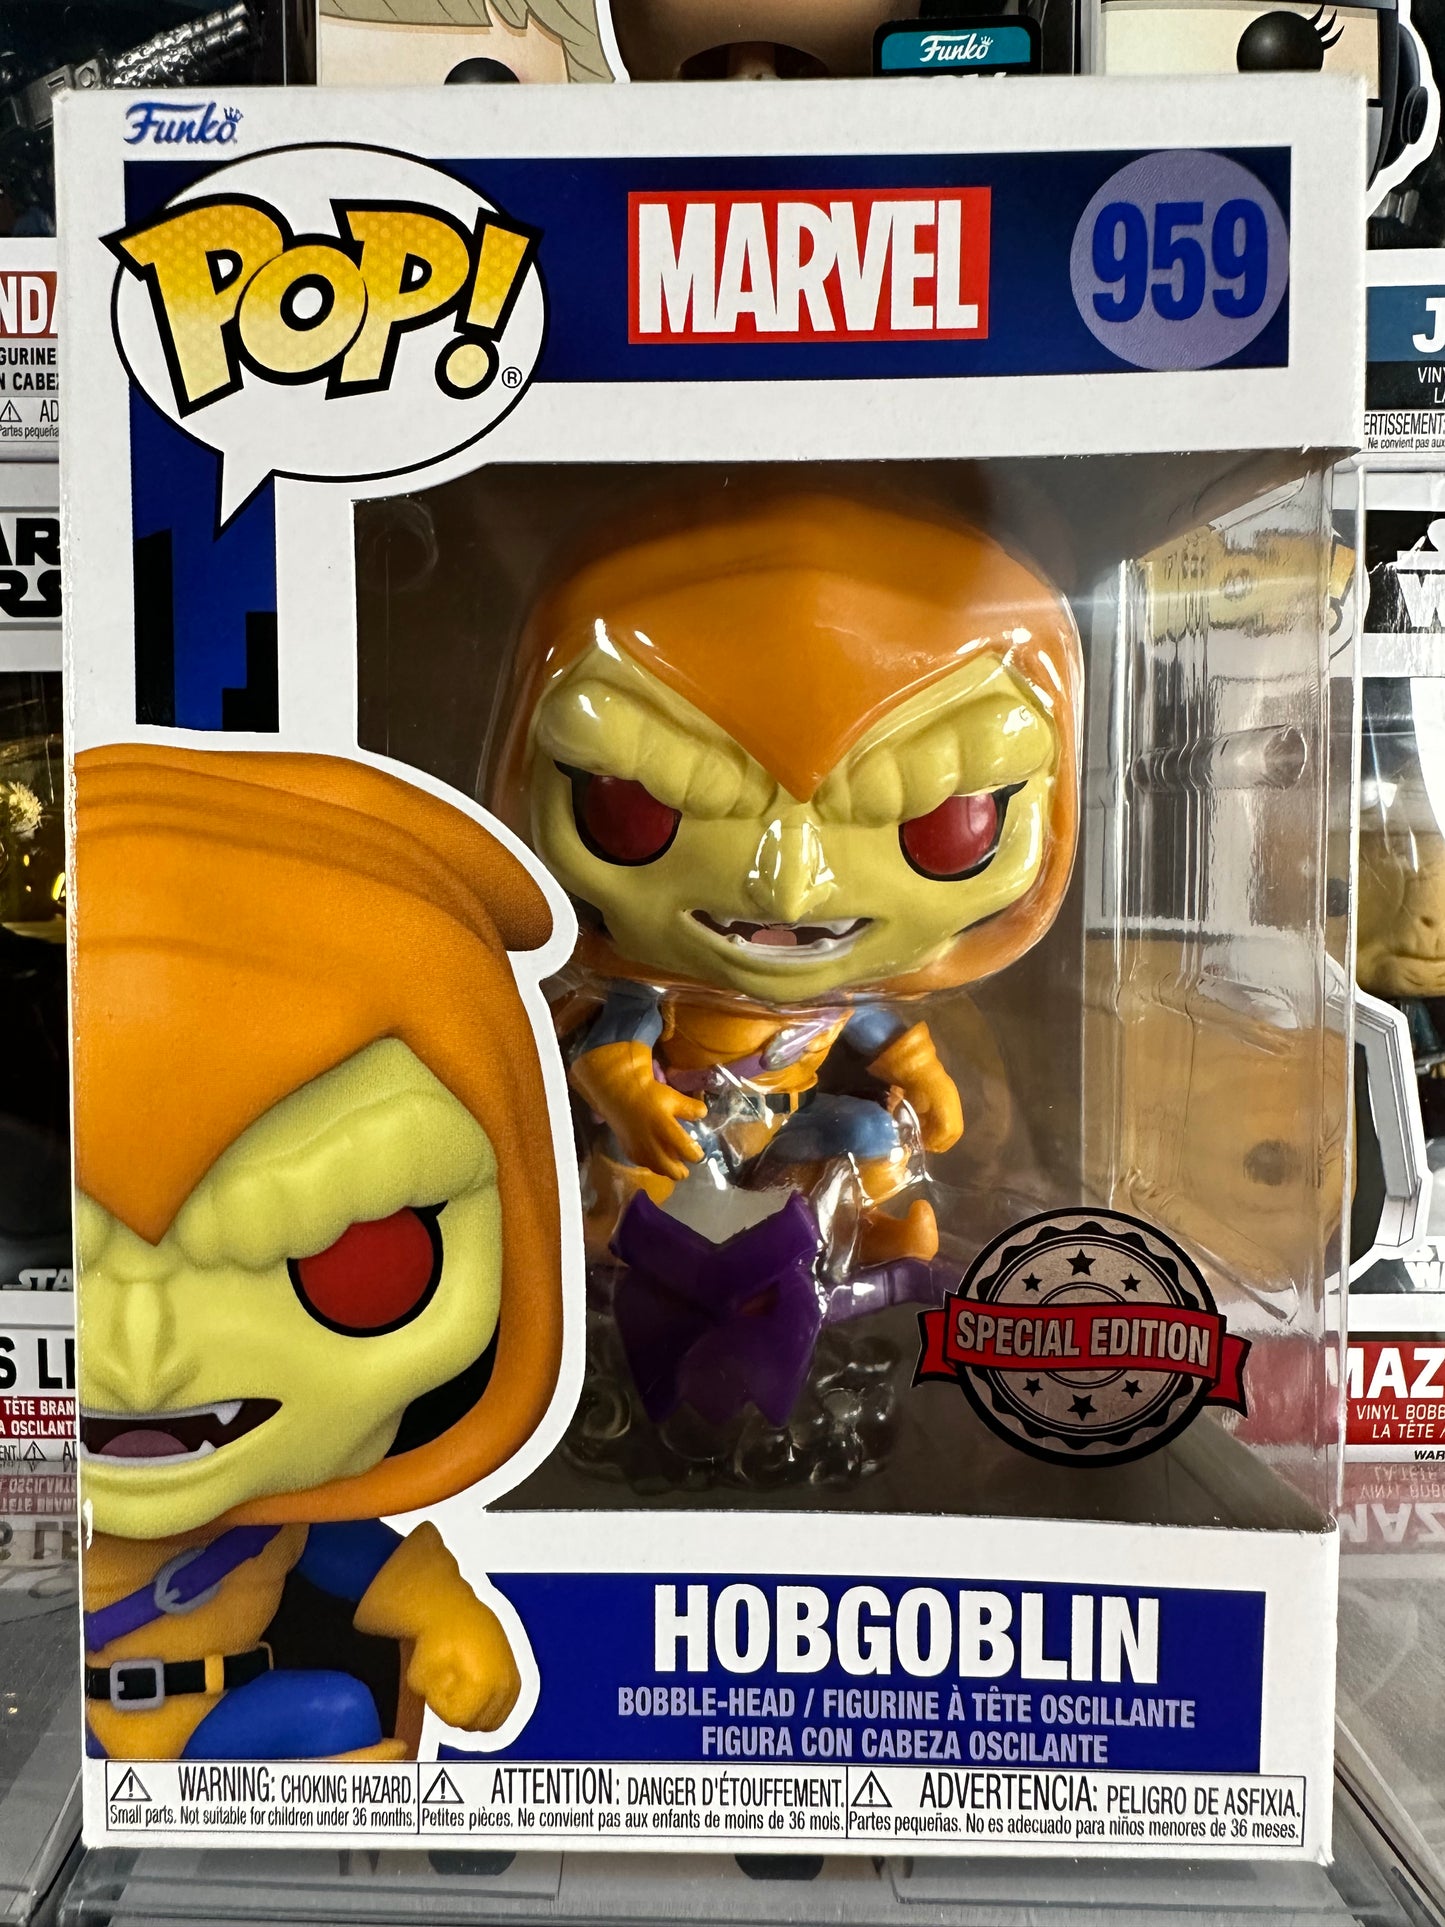 Marvel - Hobgoblin (959)